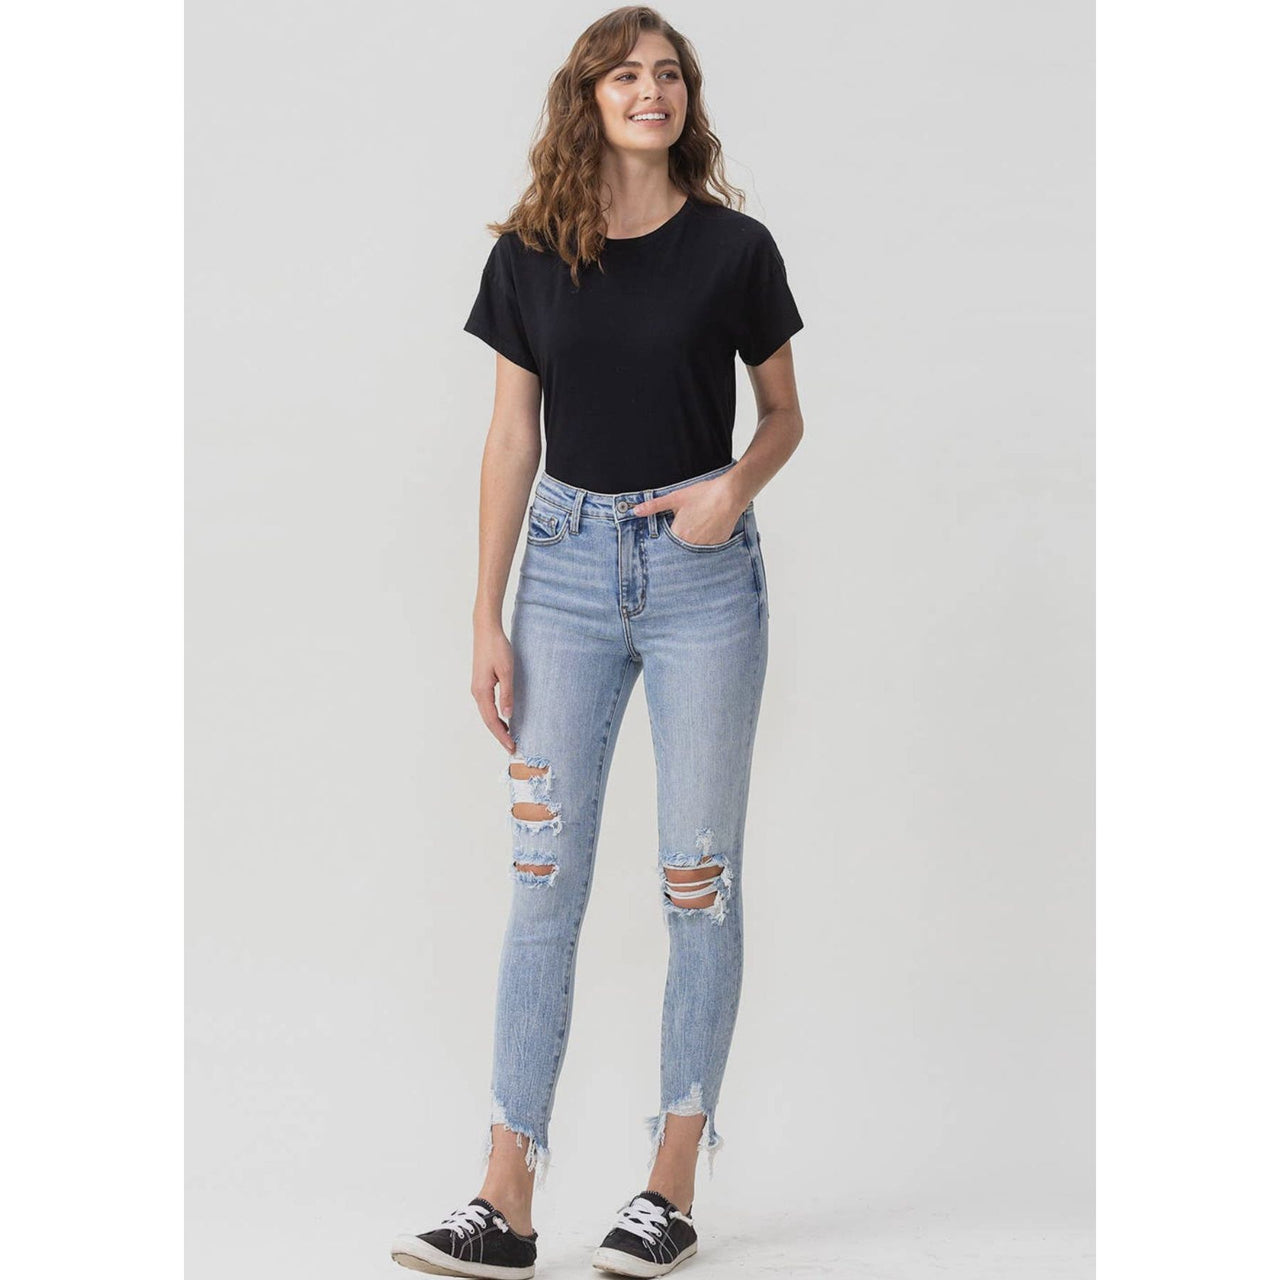 Flatteringly High Rise Skinny Denim Women's Jeans Lovervet 3 (26)  